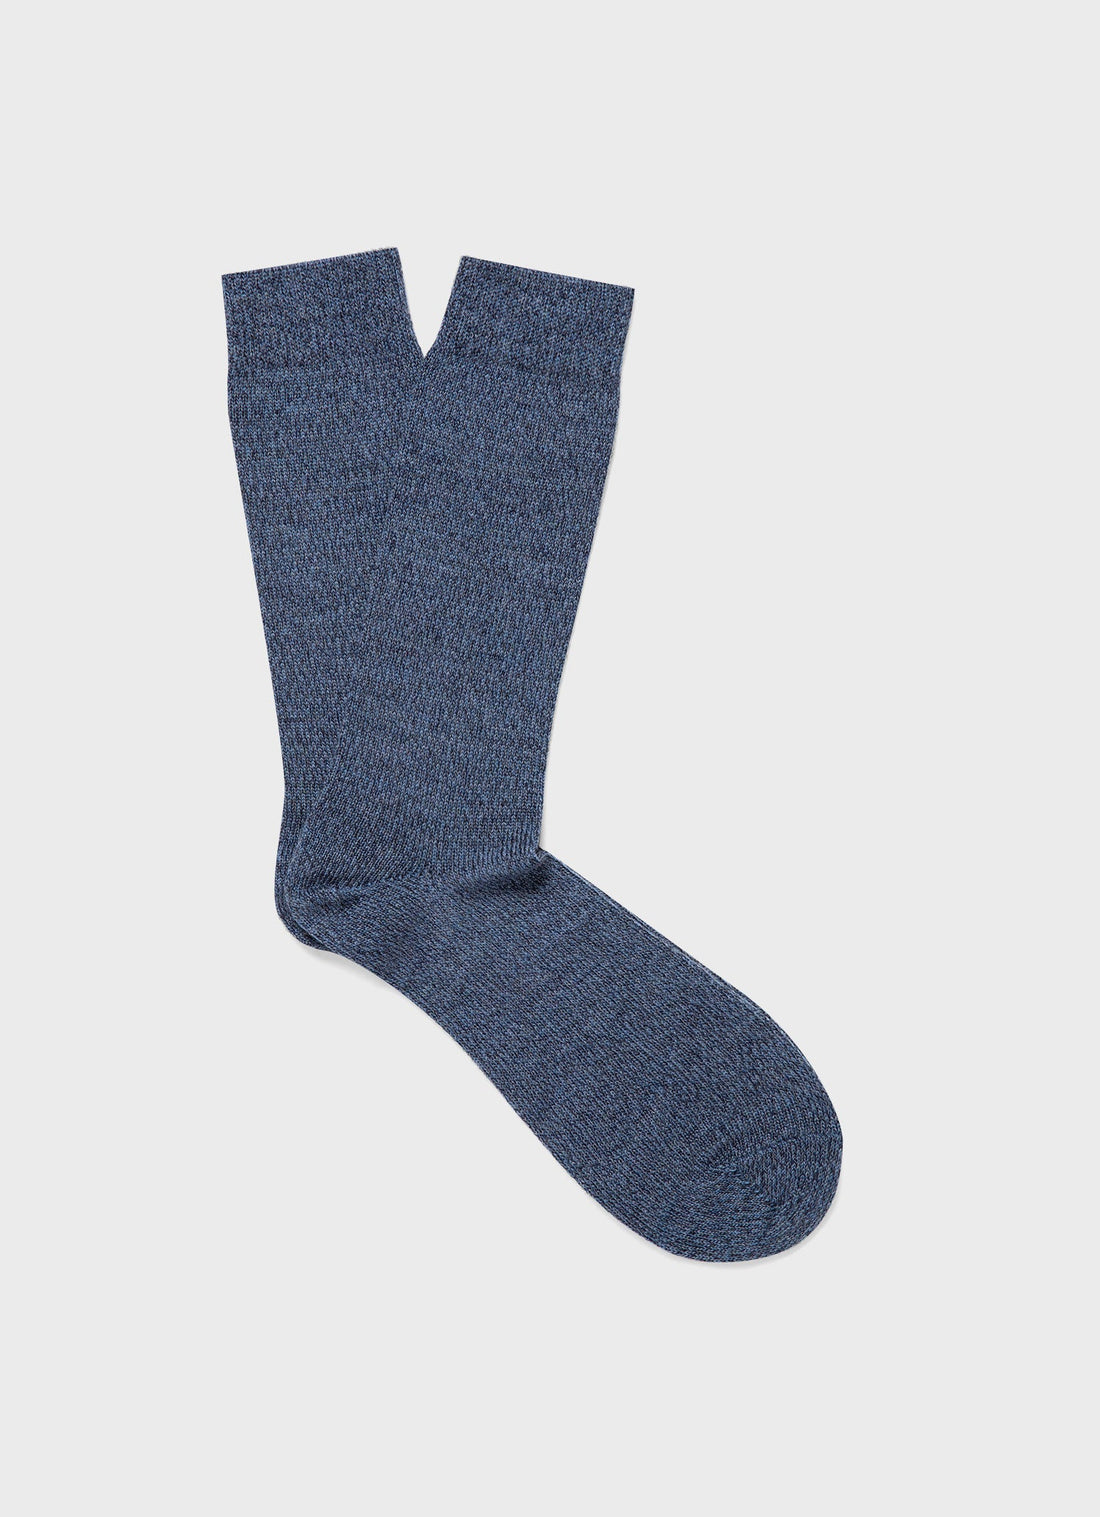 Men's Merino Wool Socks in Slate Blue